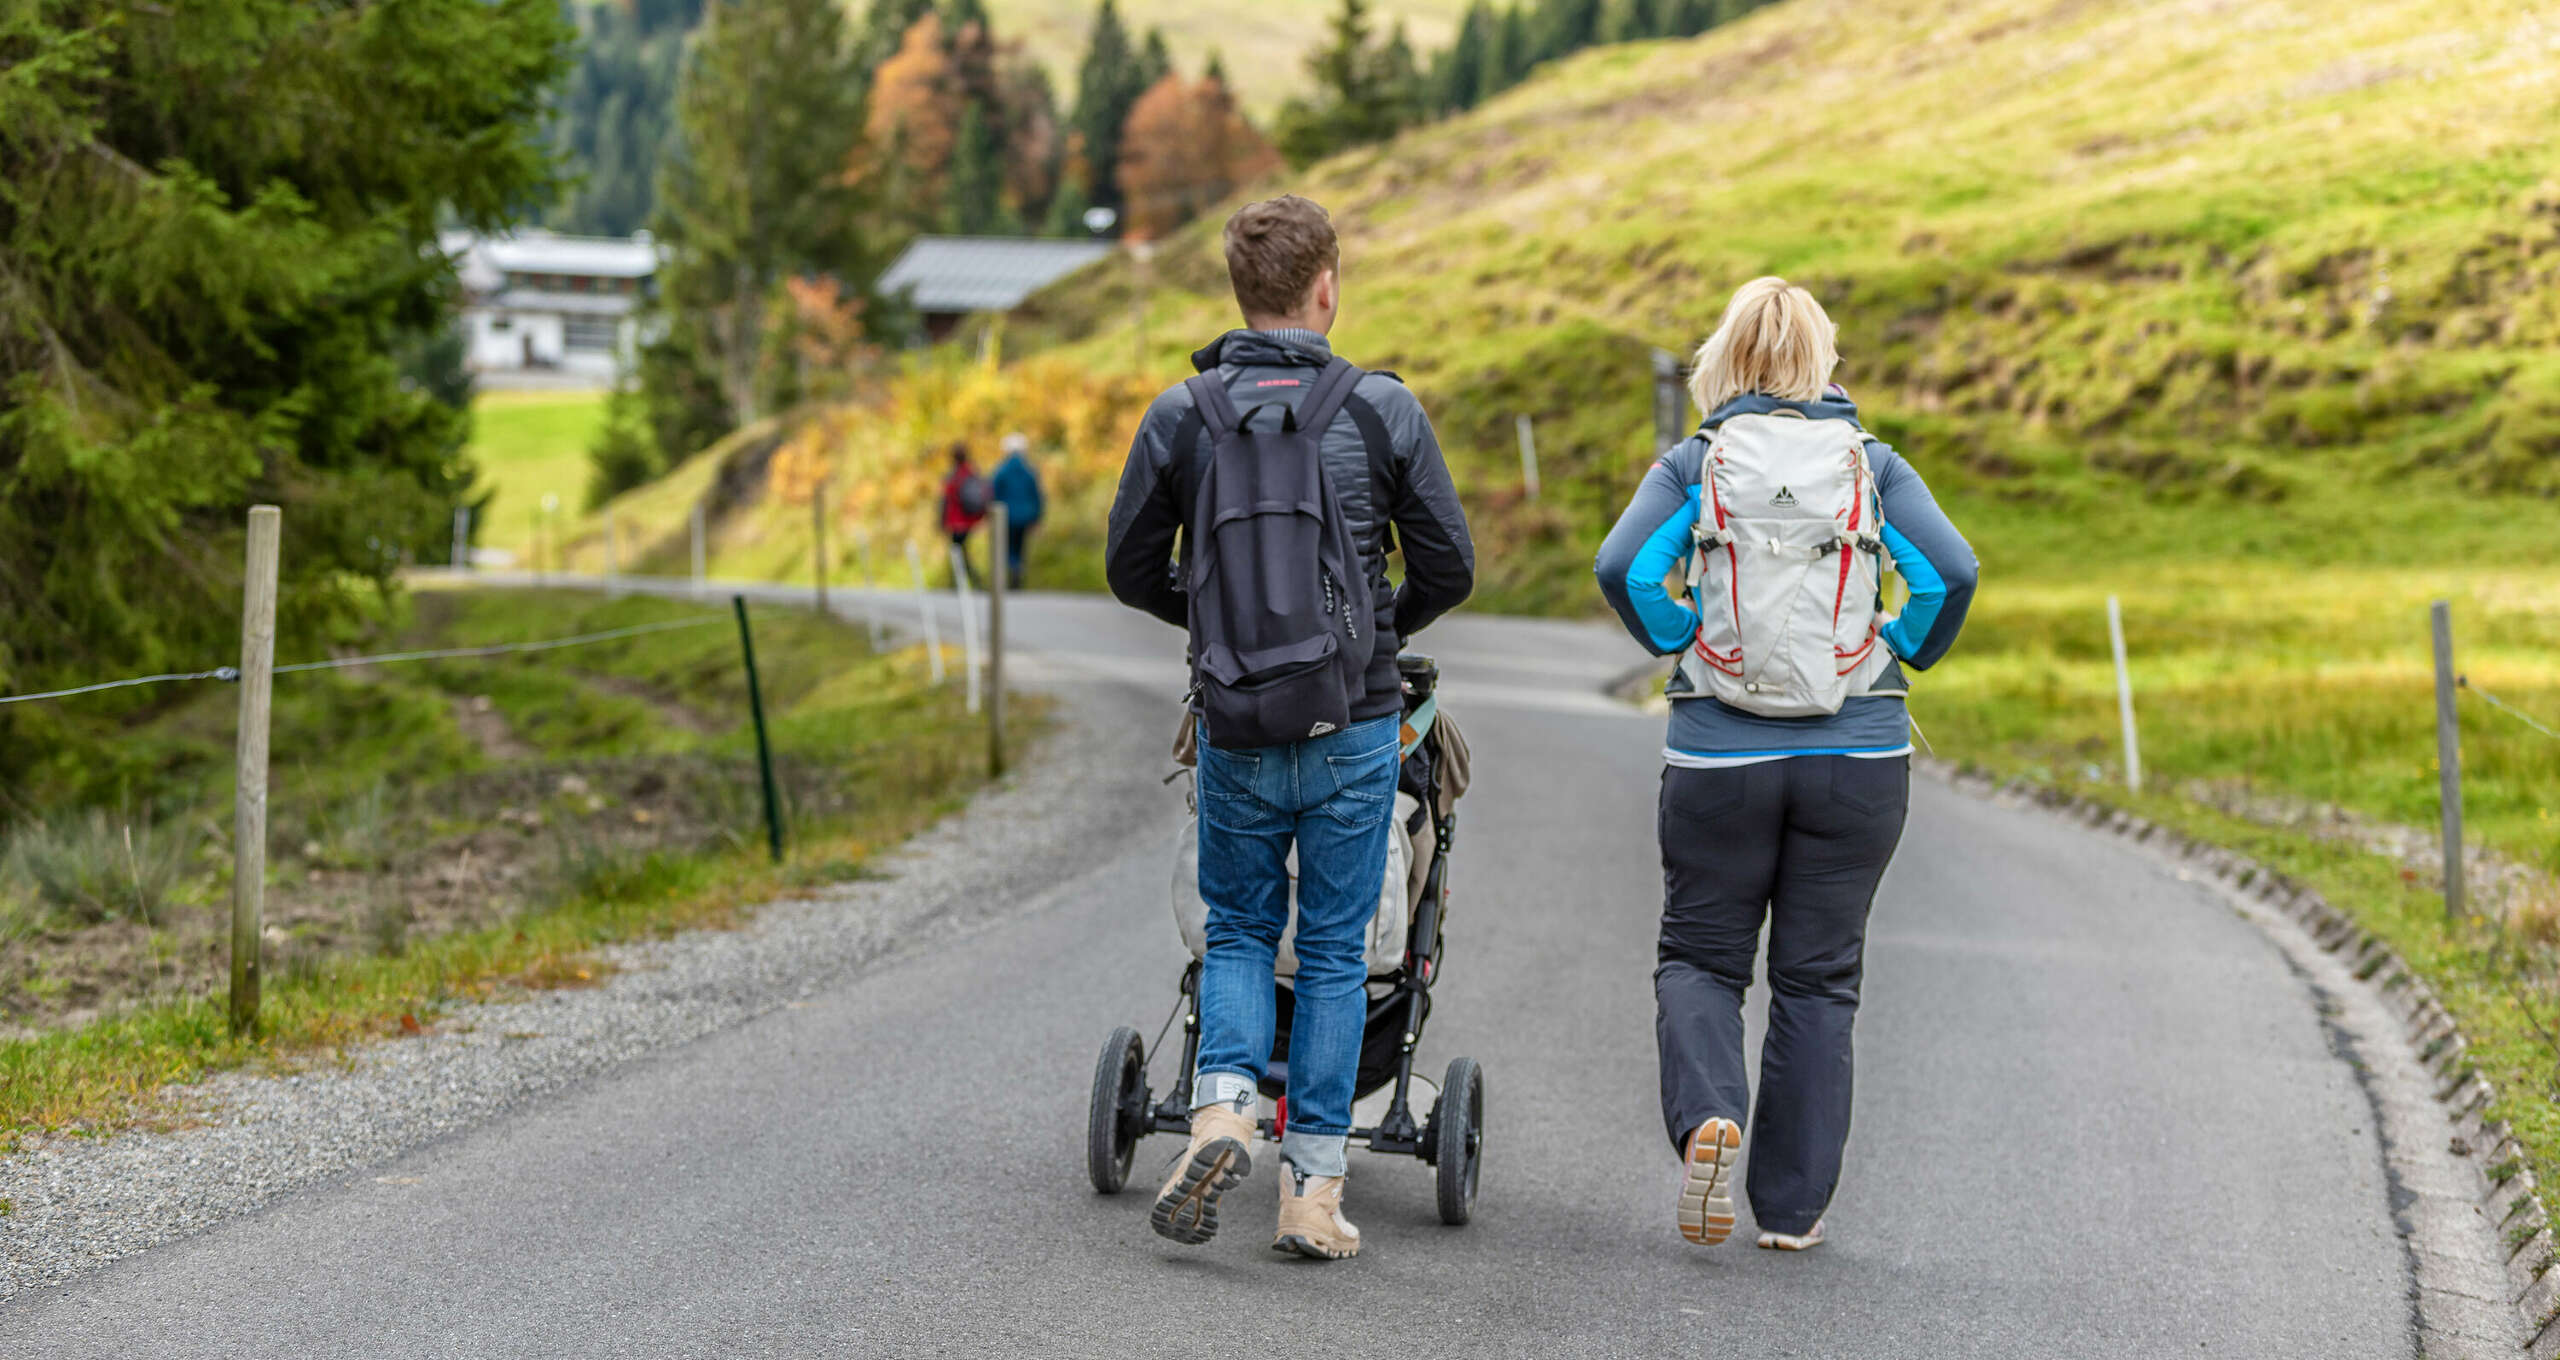 Wanderung für die ganze Familie auf den barrierefreien Wegen in Oberstaufen